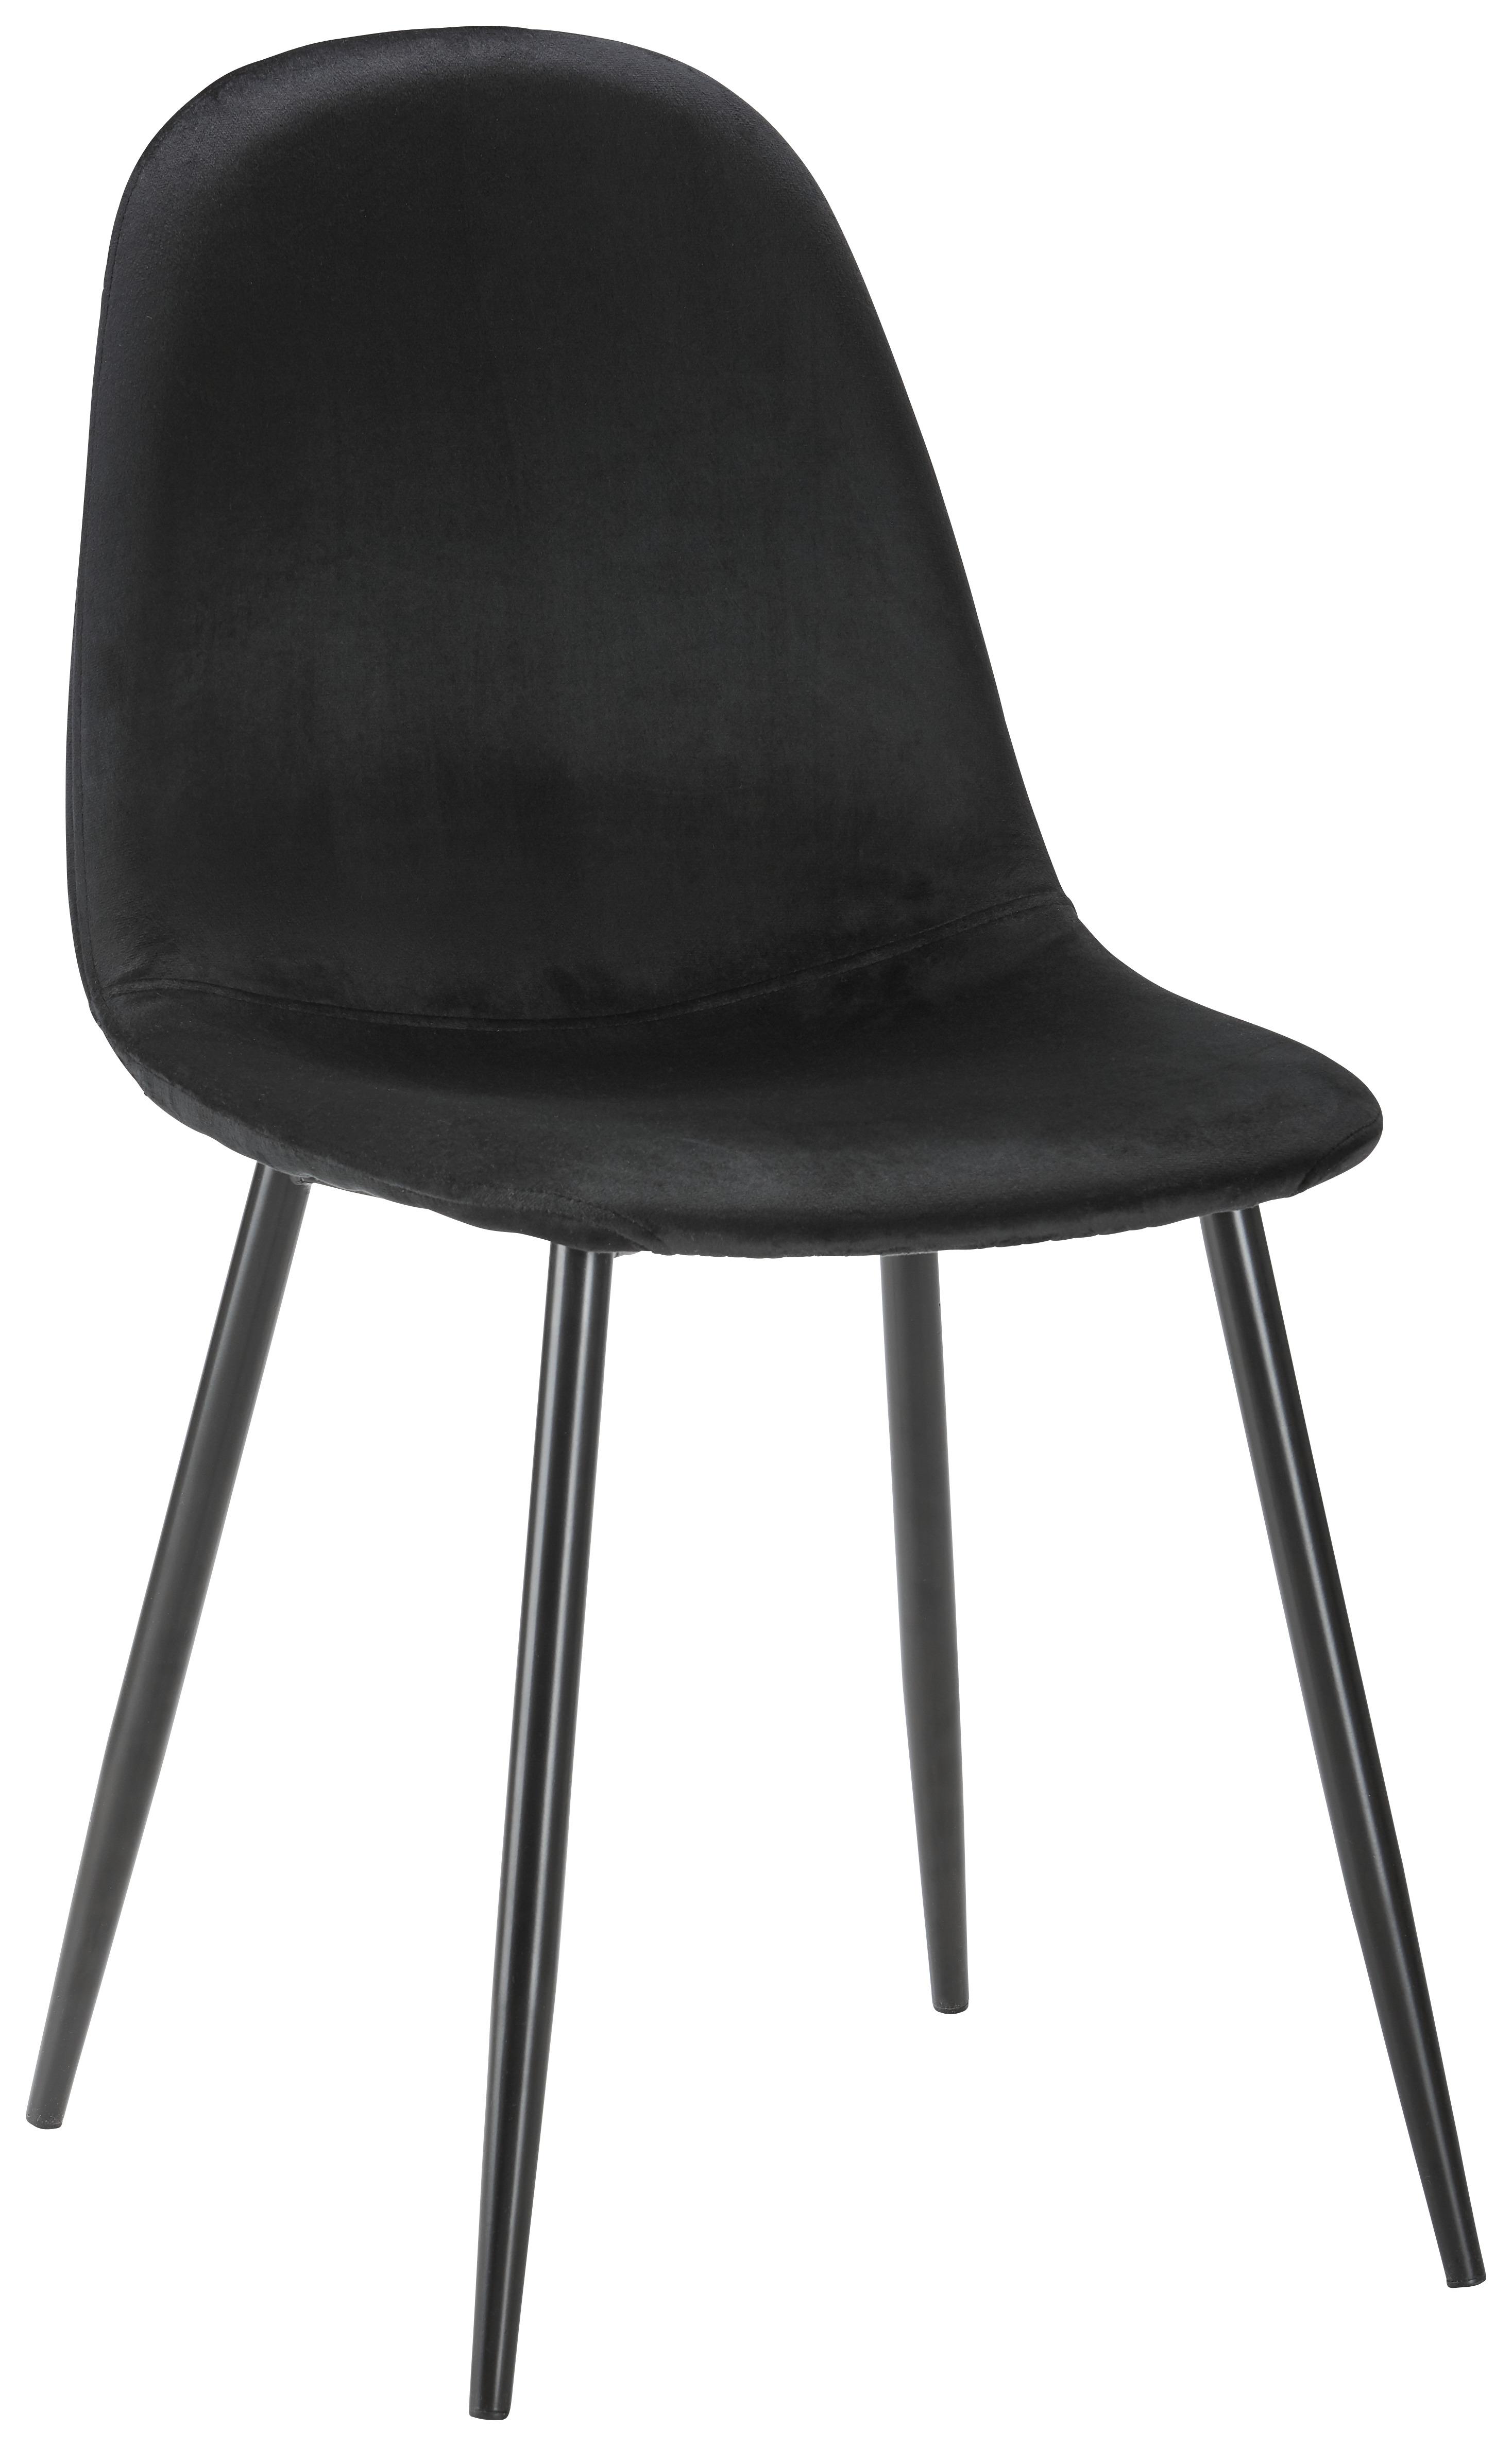 Židle Lio - černá, Moderní, kov/dřevo (43/86/55cm) - Modern Living